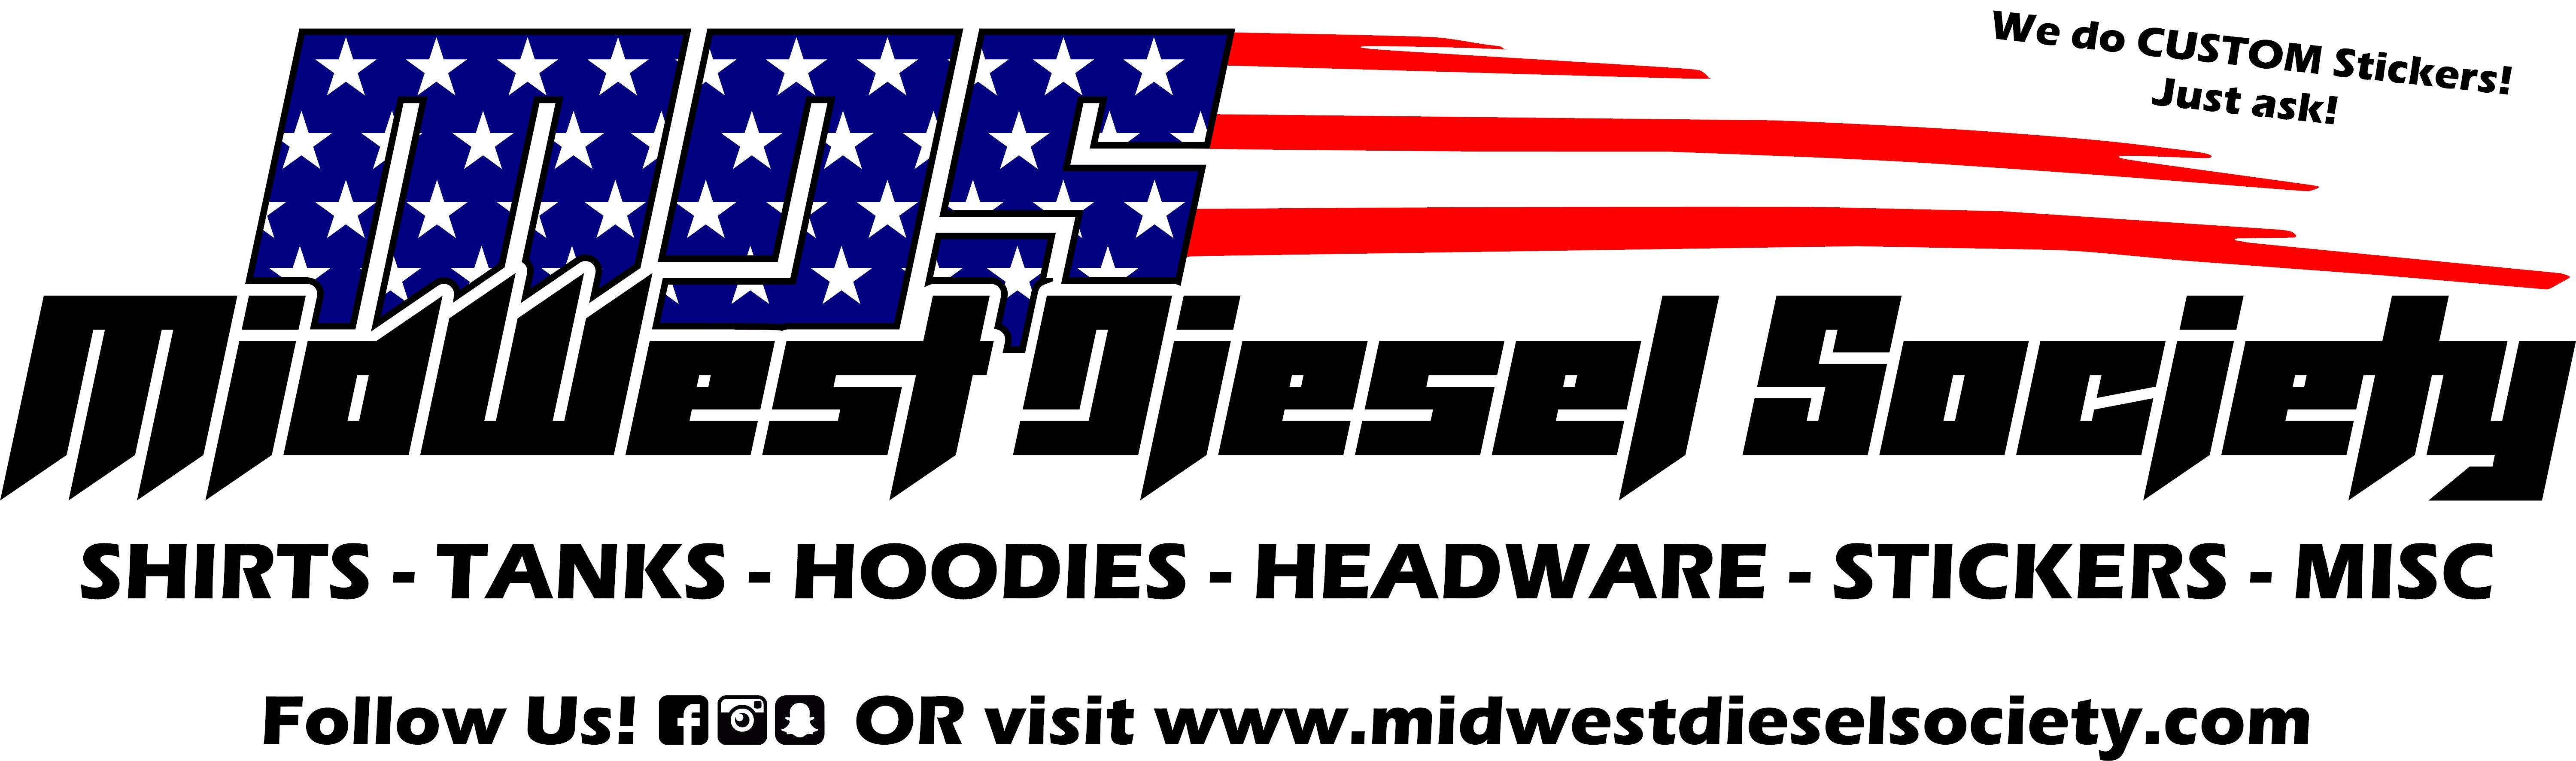 Midwest Diesel Society